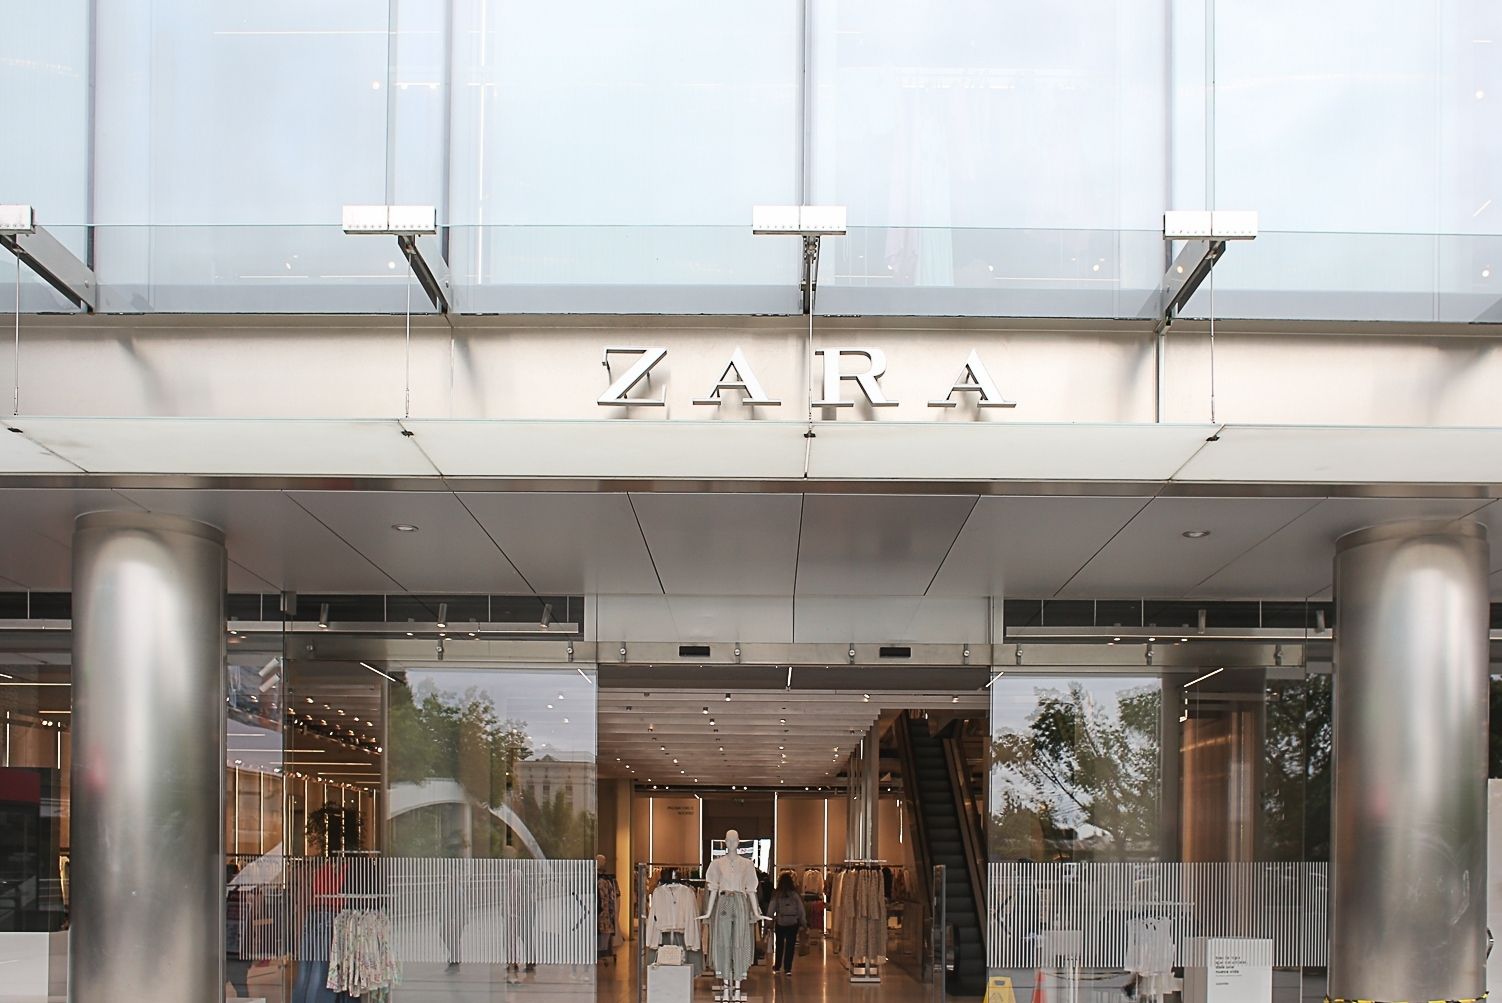 O truque para comprar a roupa de Zara que não encontras na app